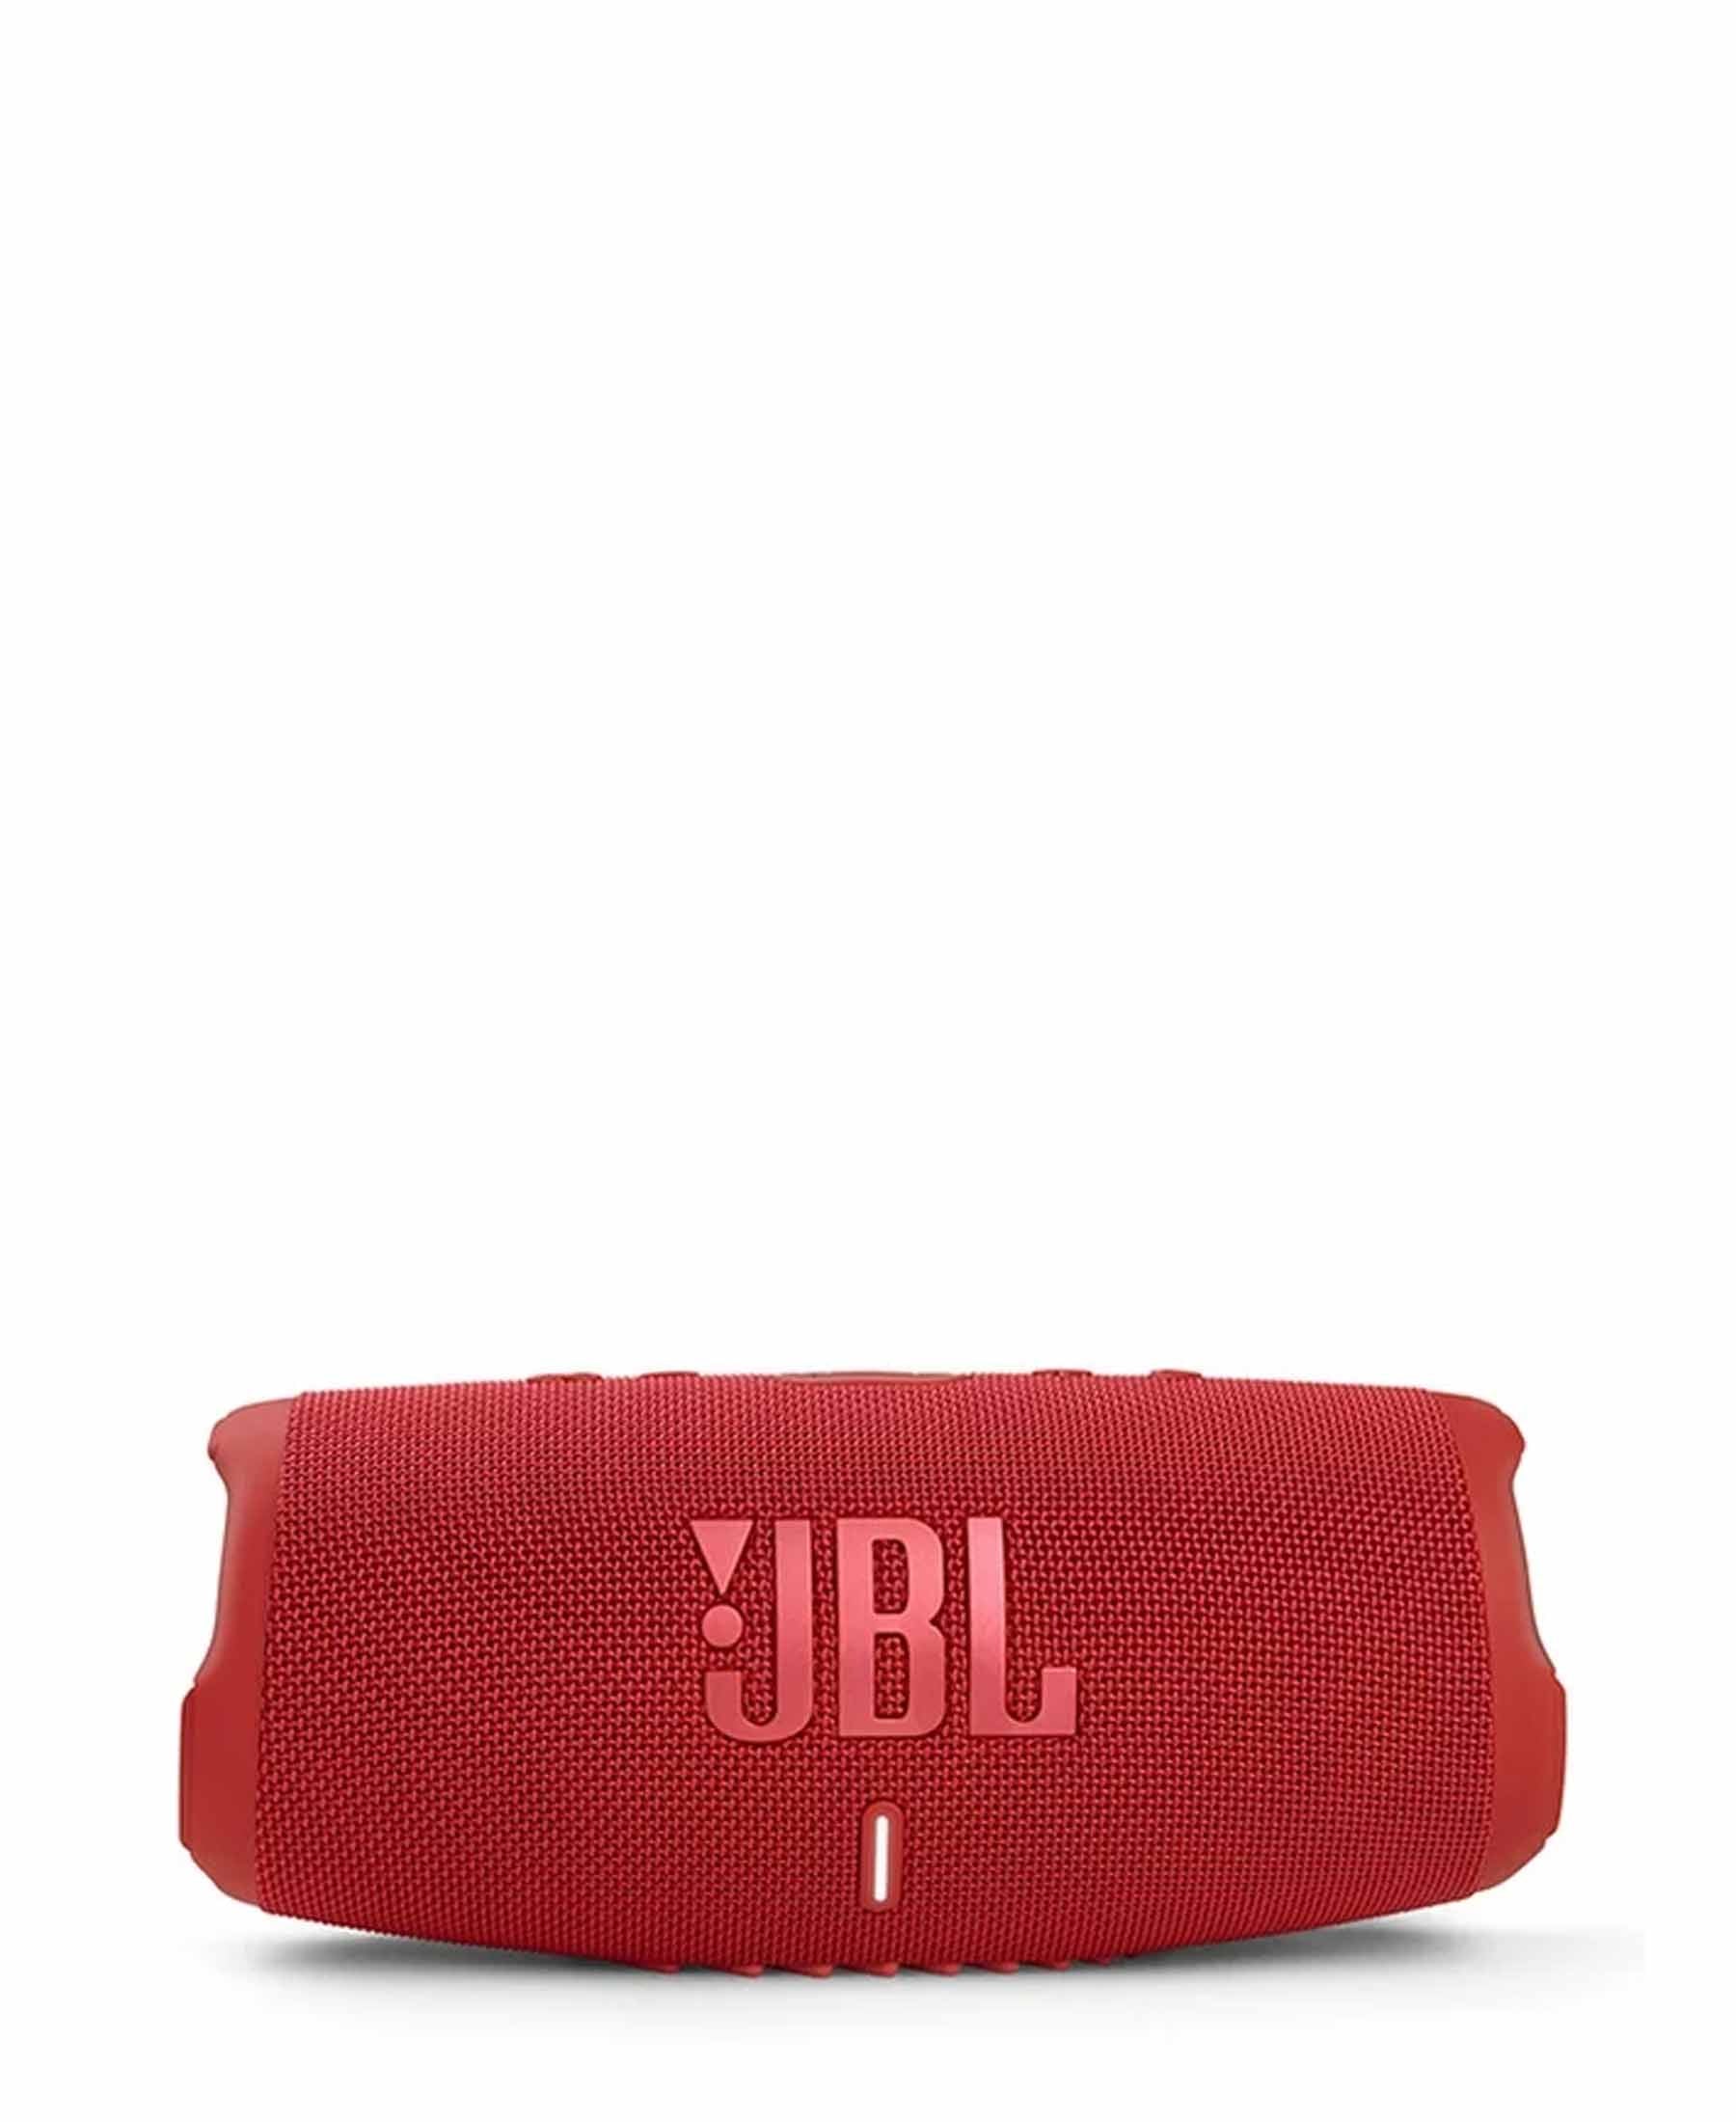 JBL Charge 5 Waterproof Portable Bluetooth Speaker - Red